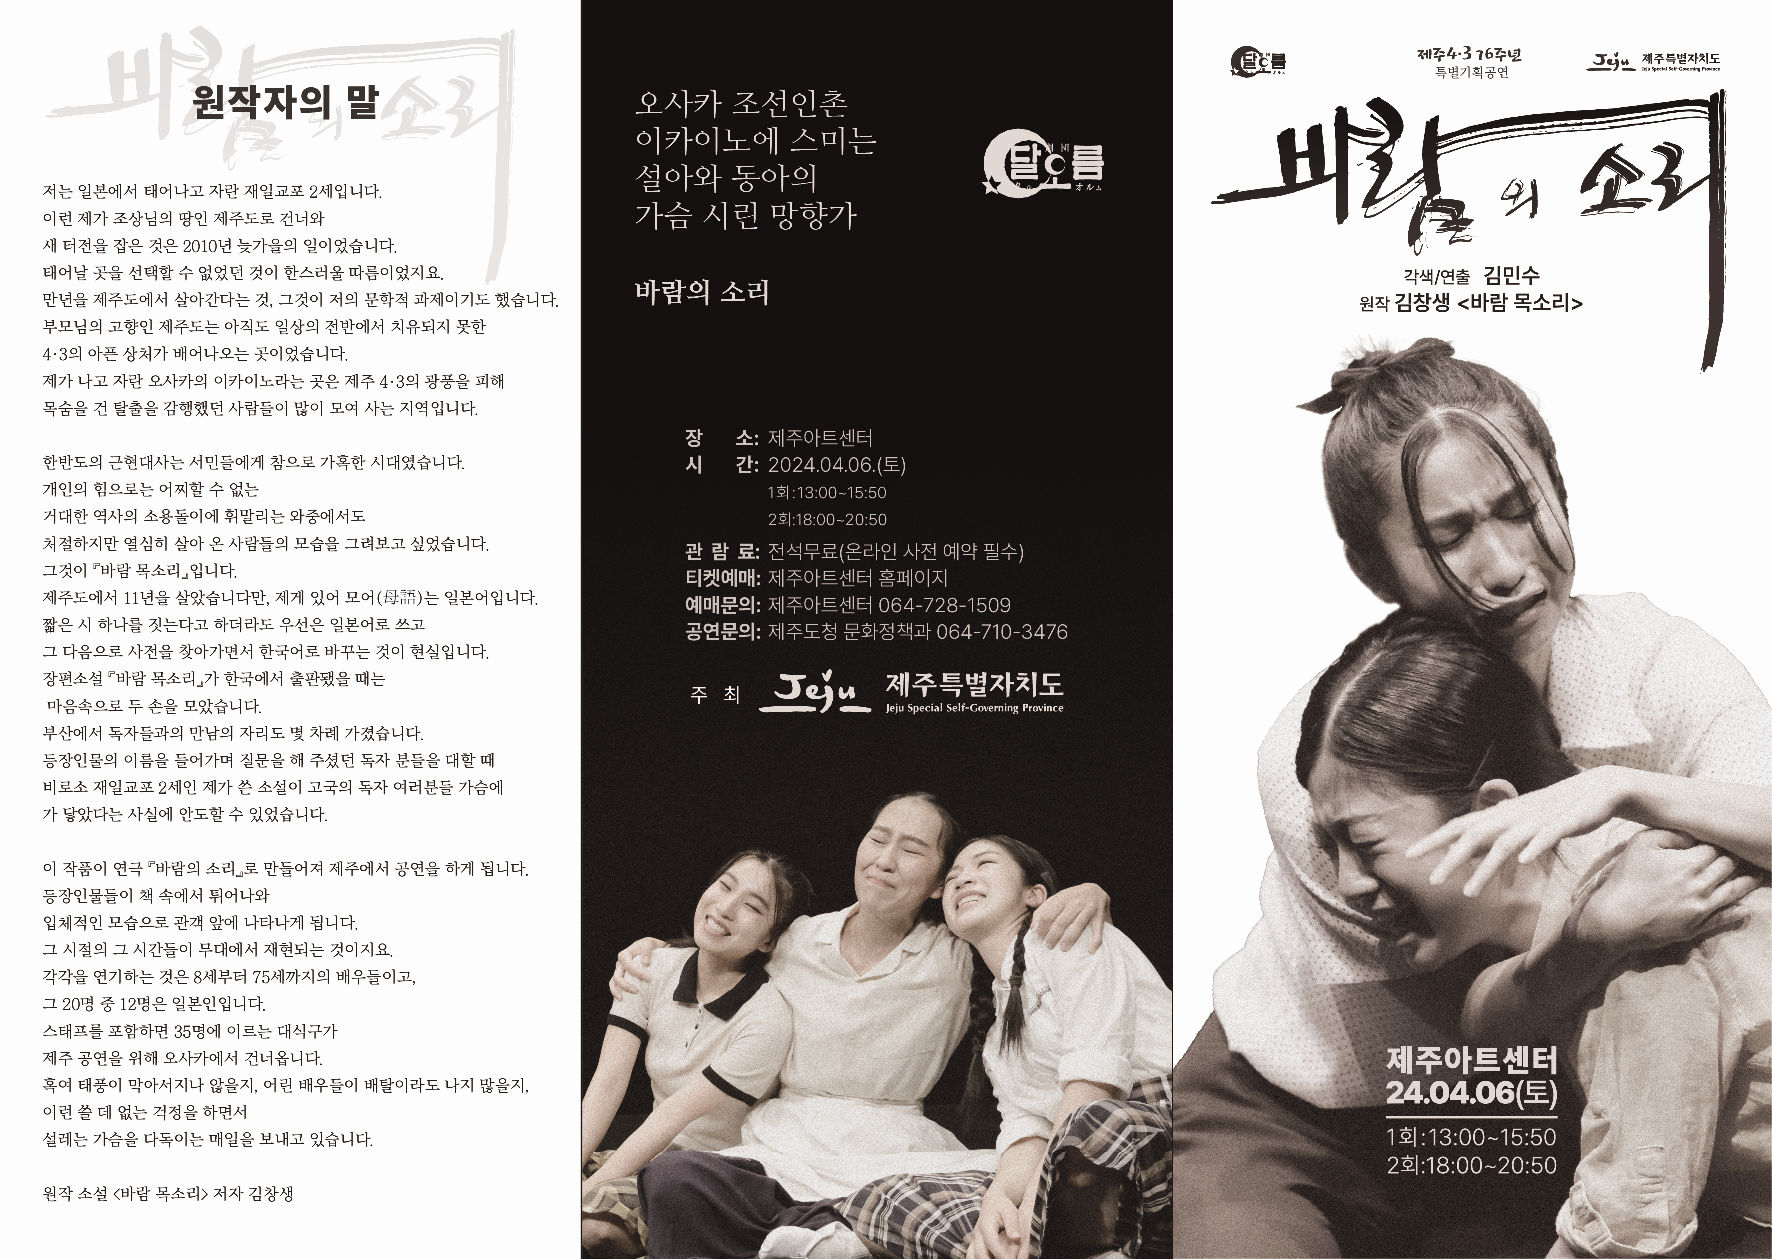 4.3기념 특별기획 연극 공연 '바람의 소리'홍보